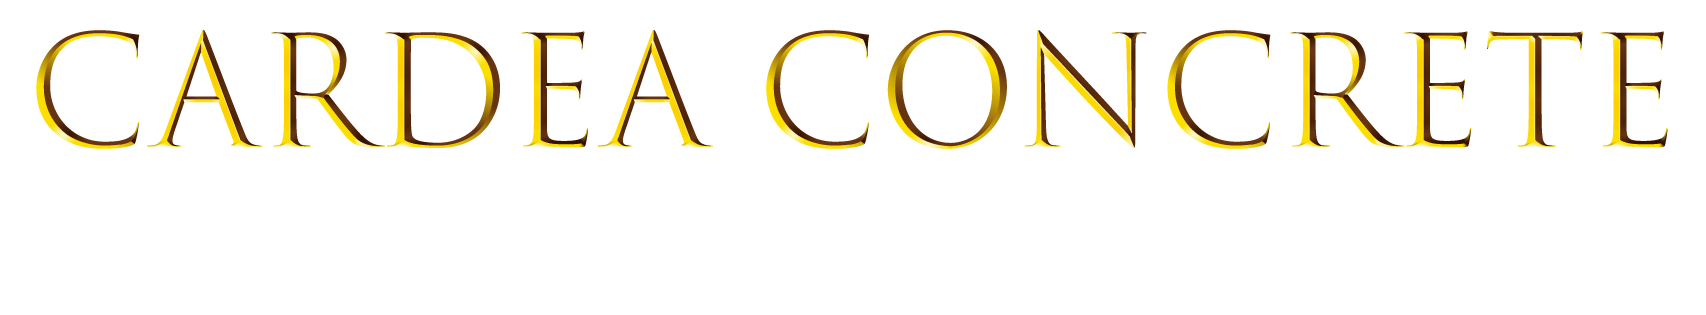 Cardea Concrete - Larger Logo